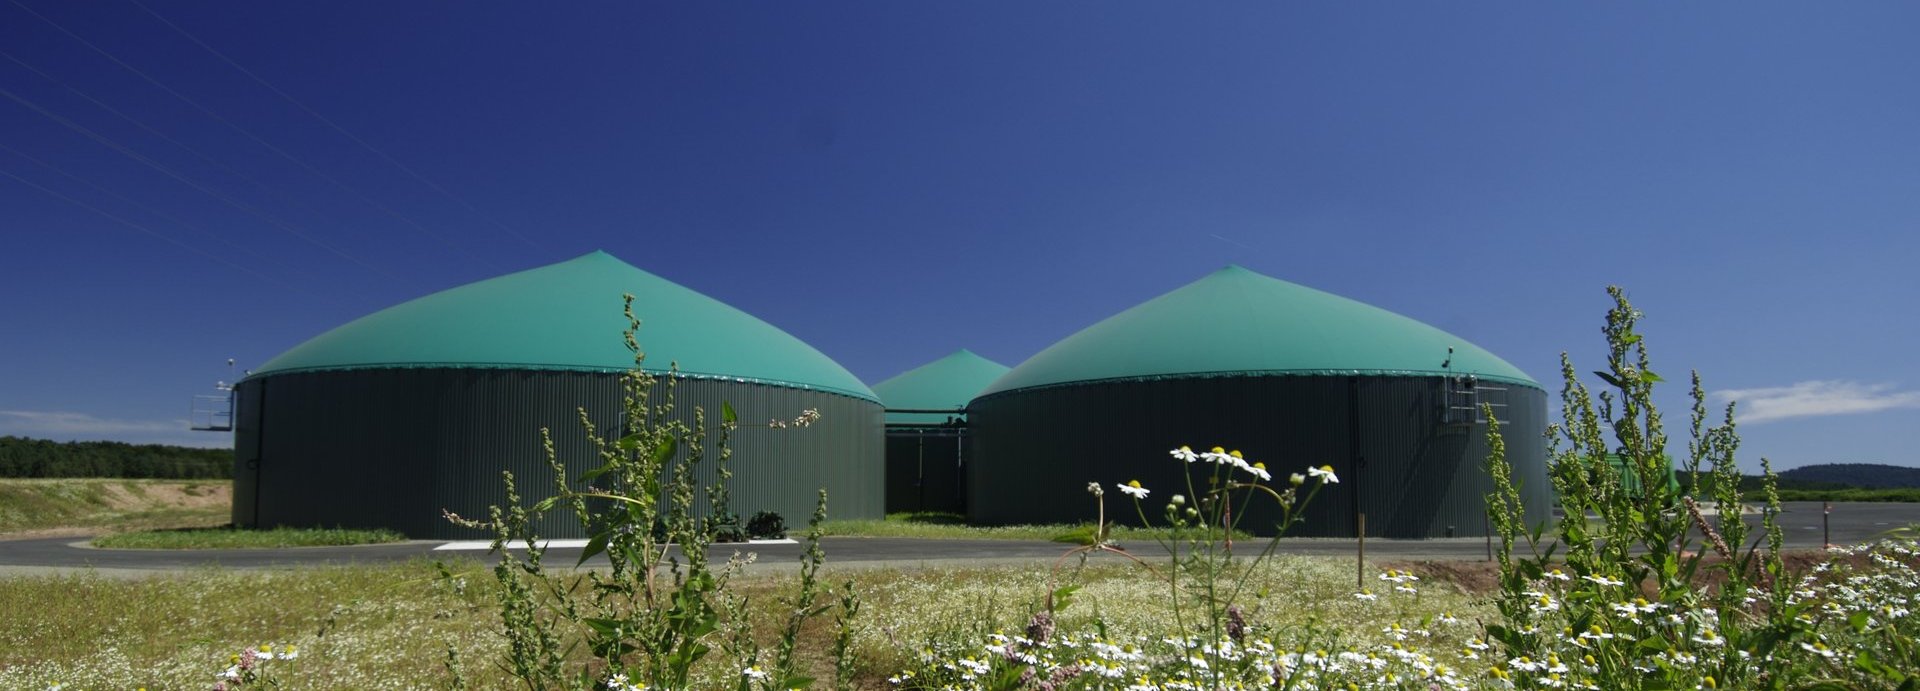 Biogasanlage vor blauem Himmel mit Blumen im Vordergrund